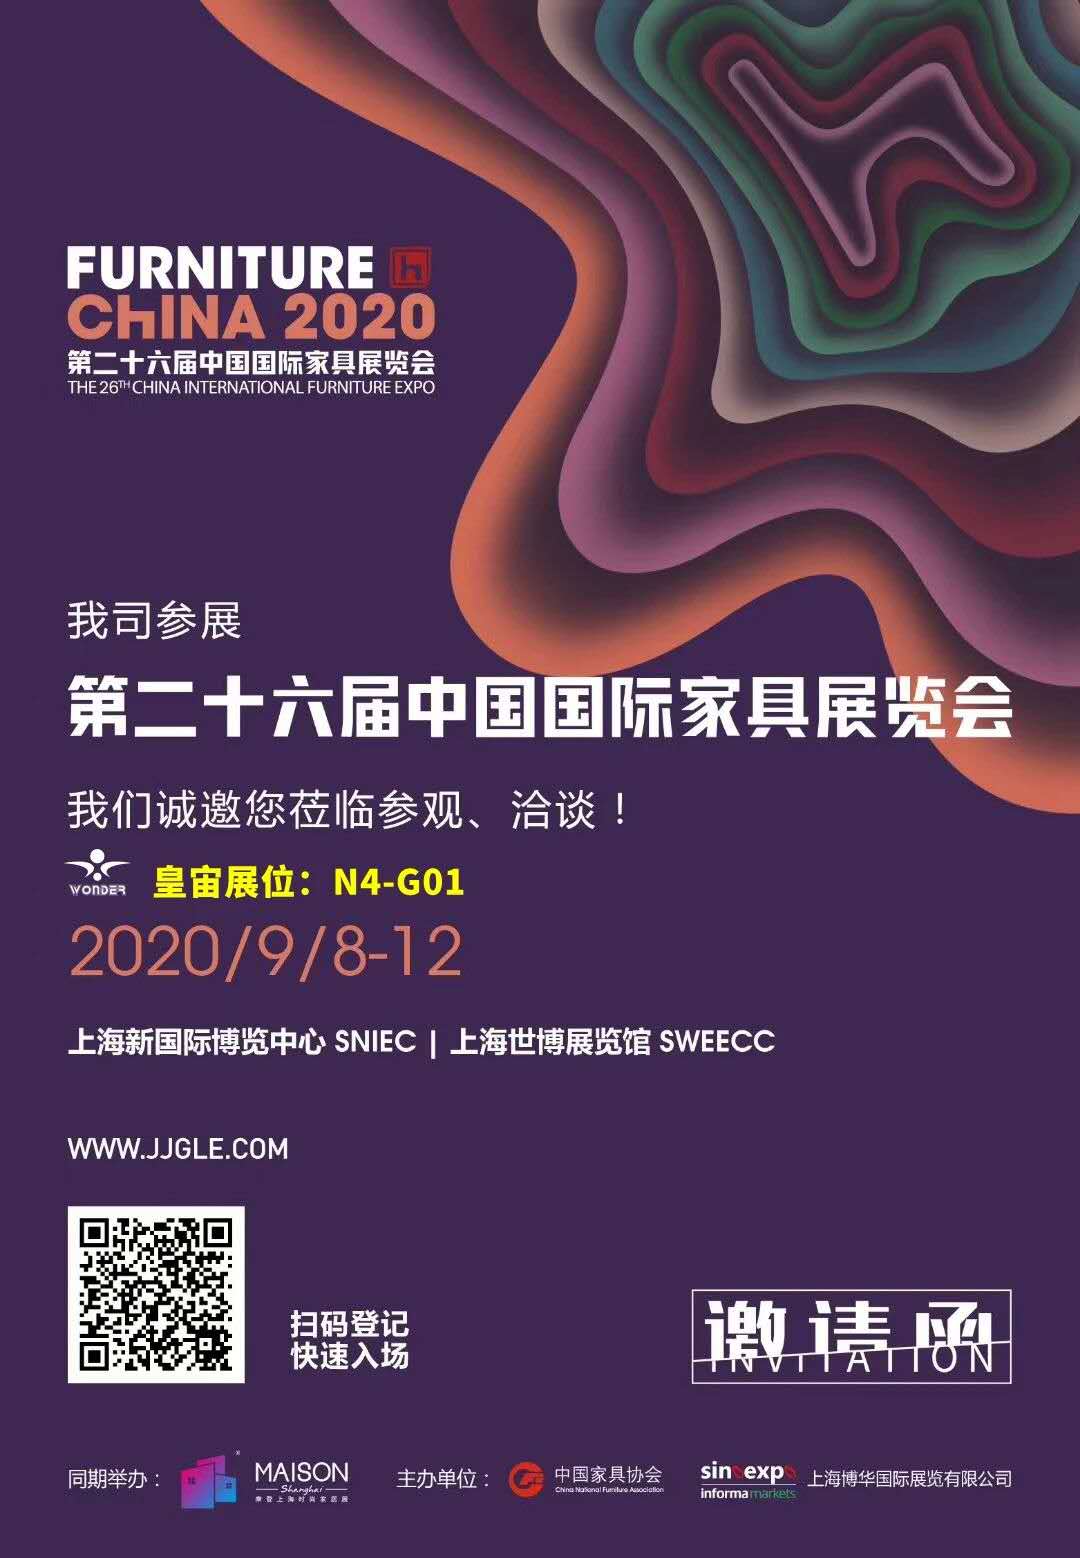 ¡La 26ª expo de muebles internacionales de China!